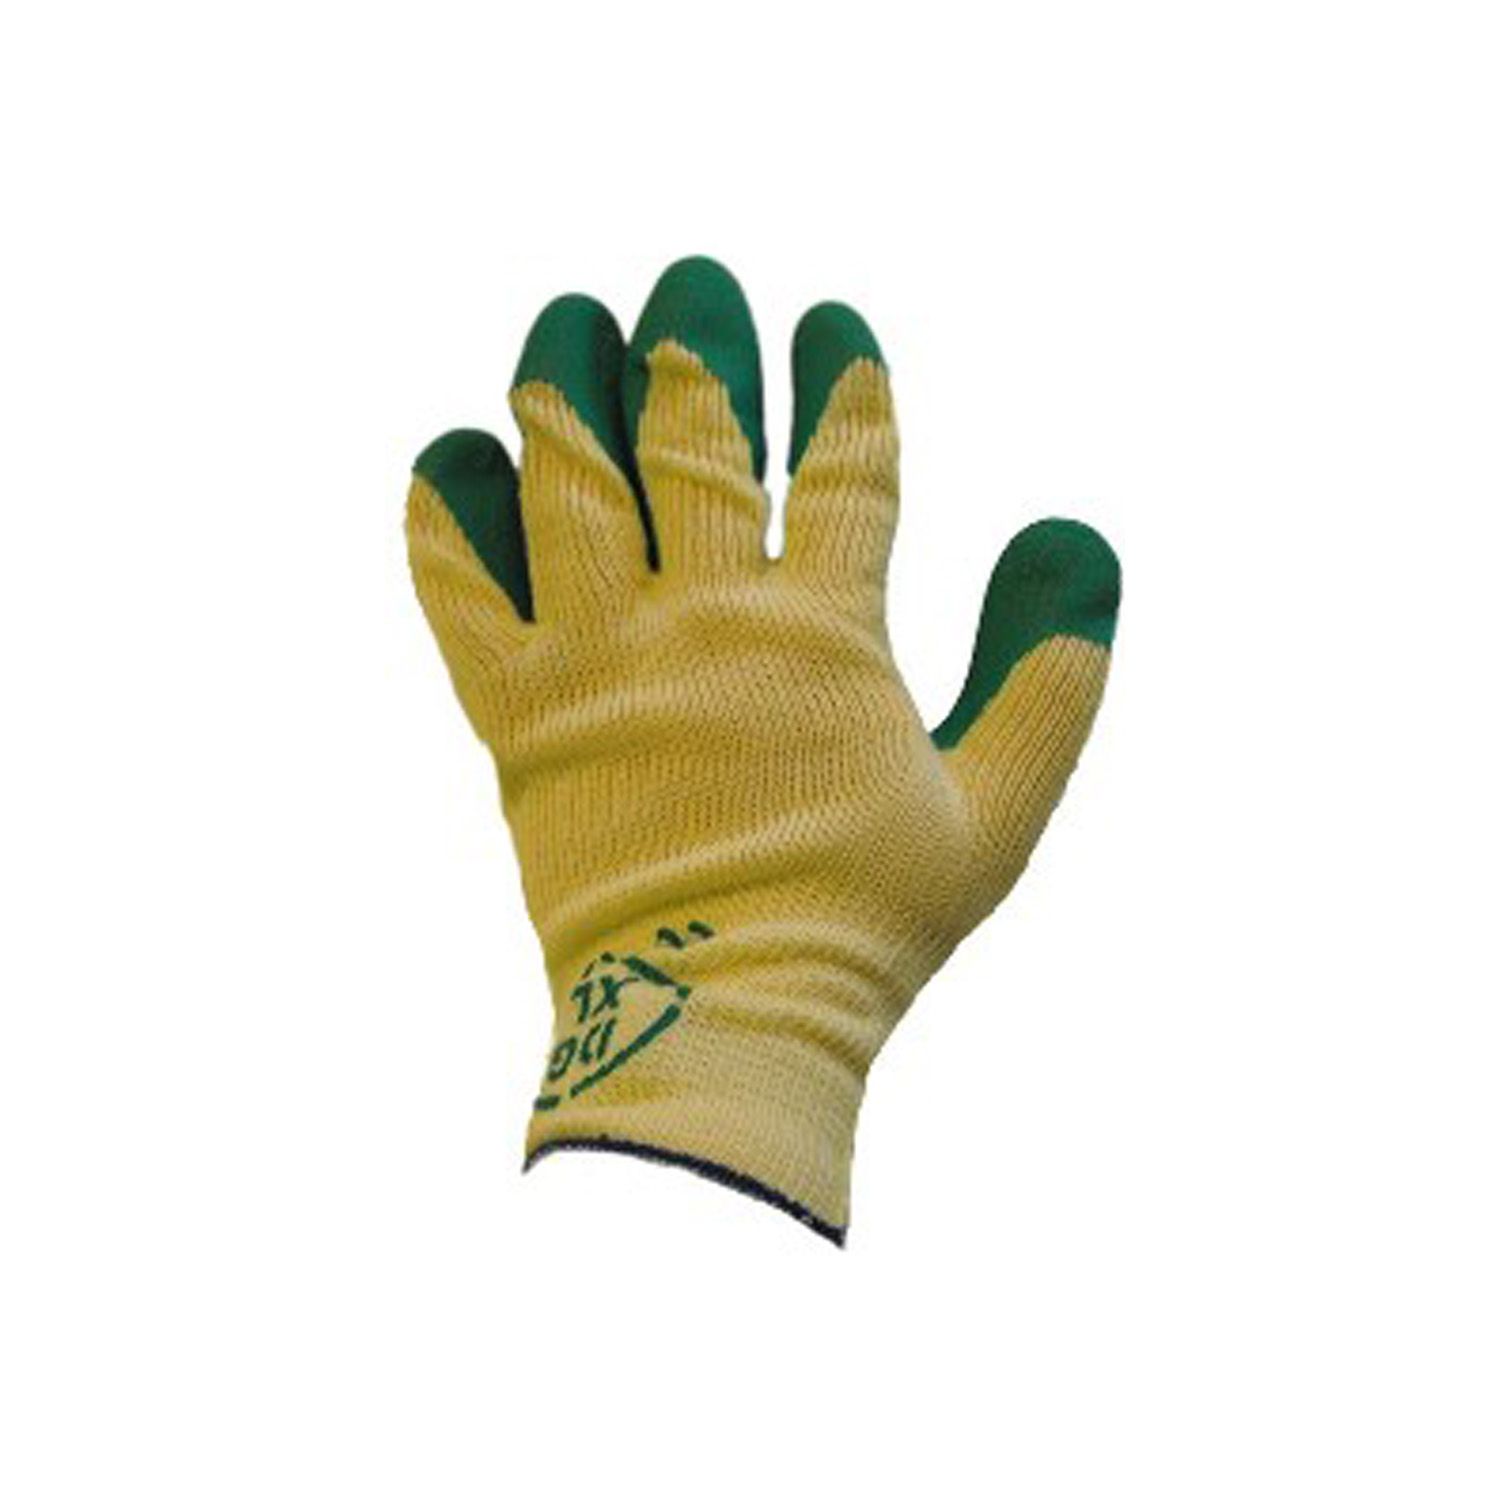 Arbeitshandschuhe - K015 Latex grün Größe 9 - Schutzhandschuhe